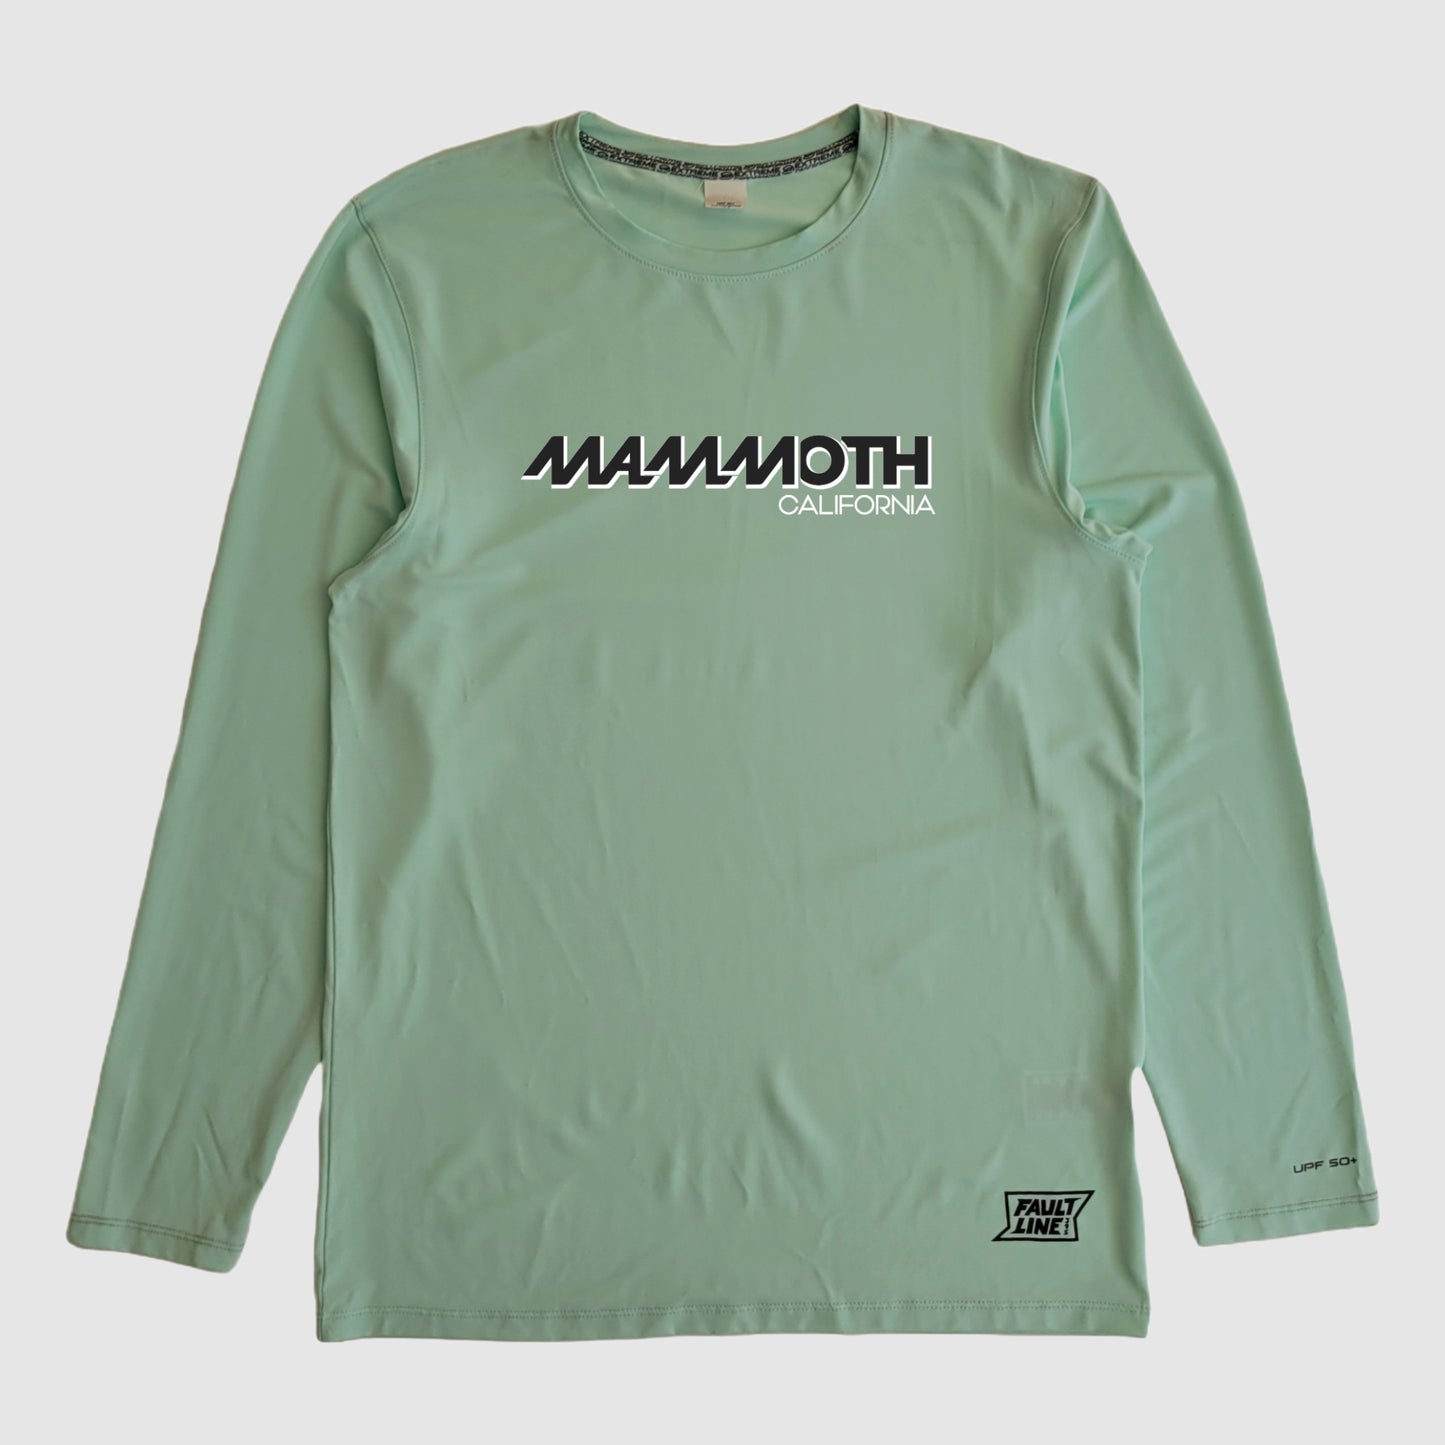 Mammoth, CA Stretch Tech Tee L/S - Mint Green